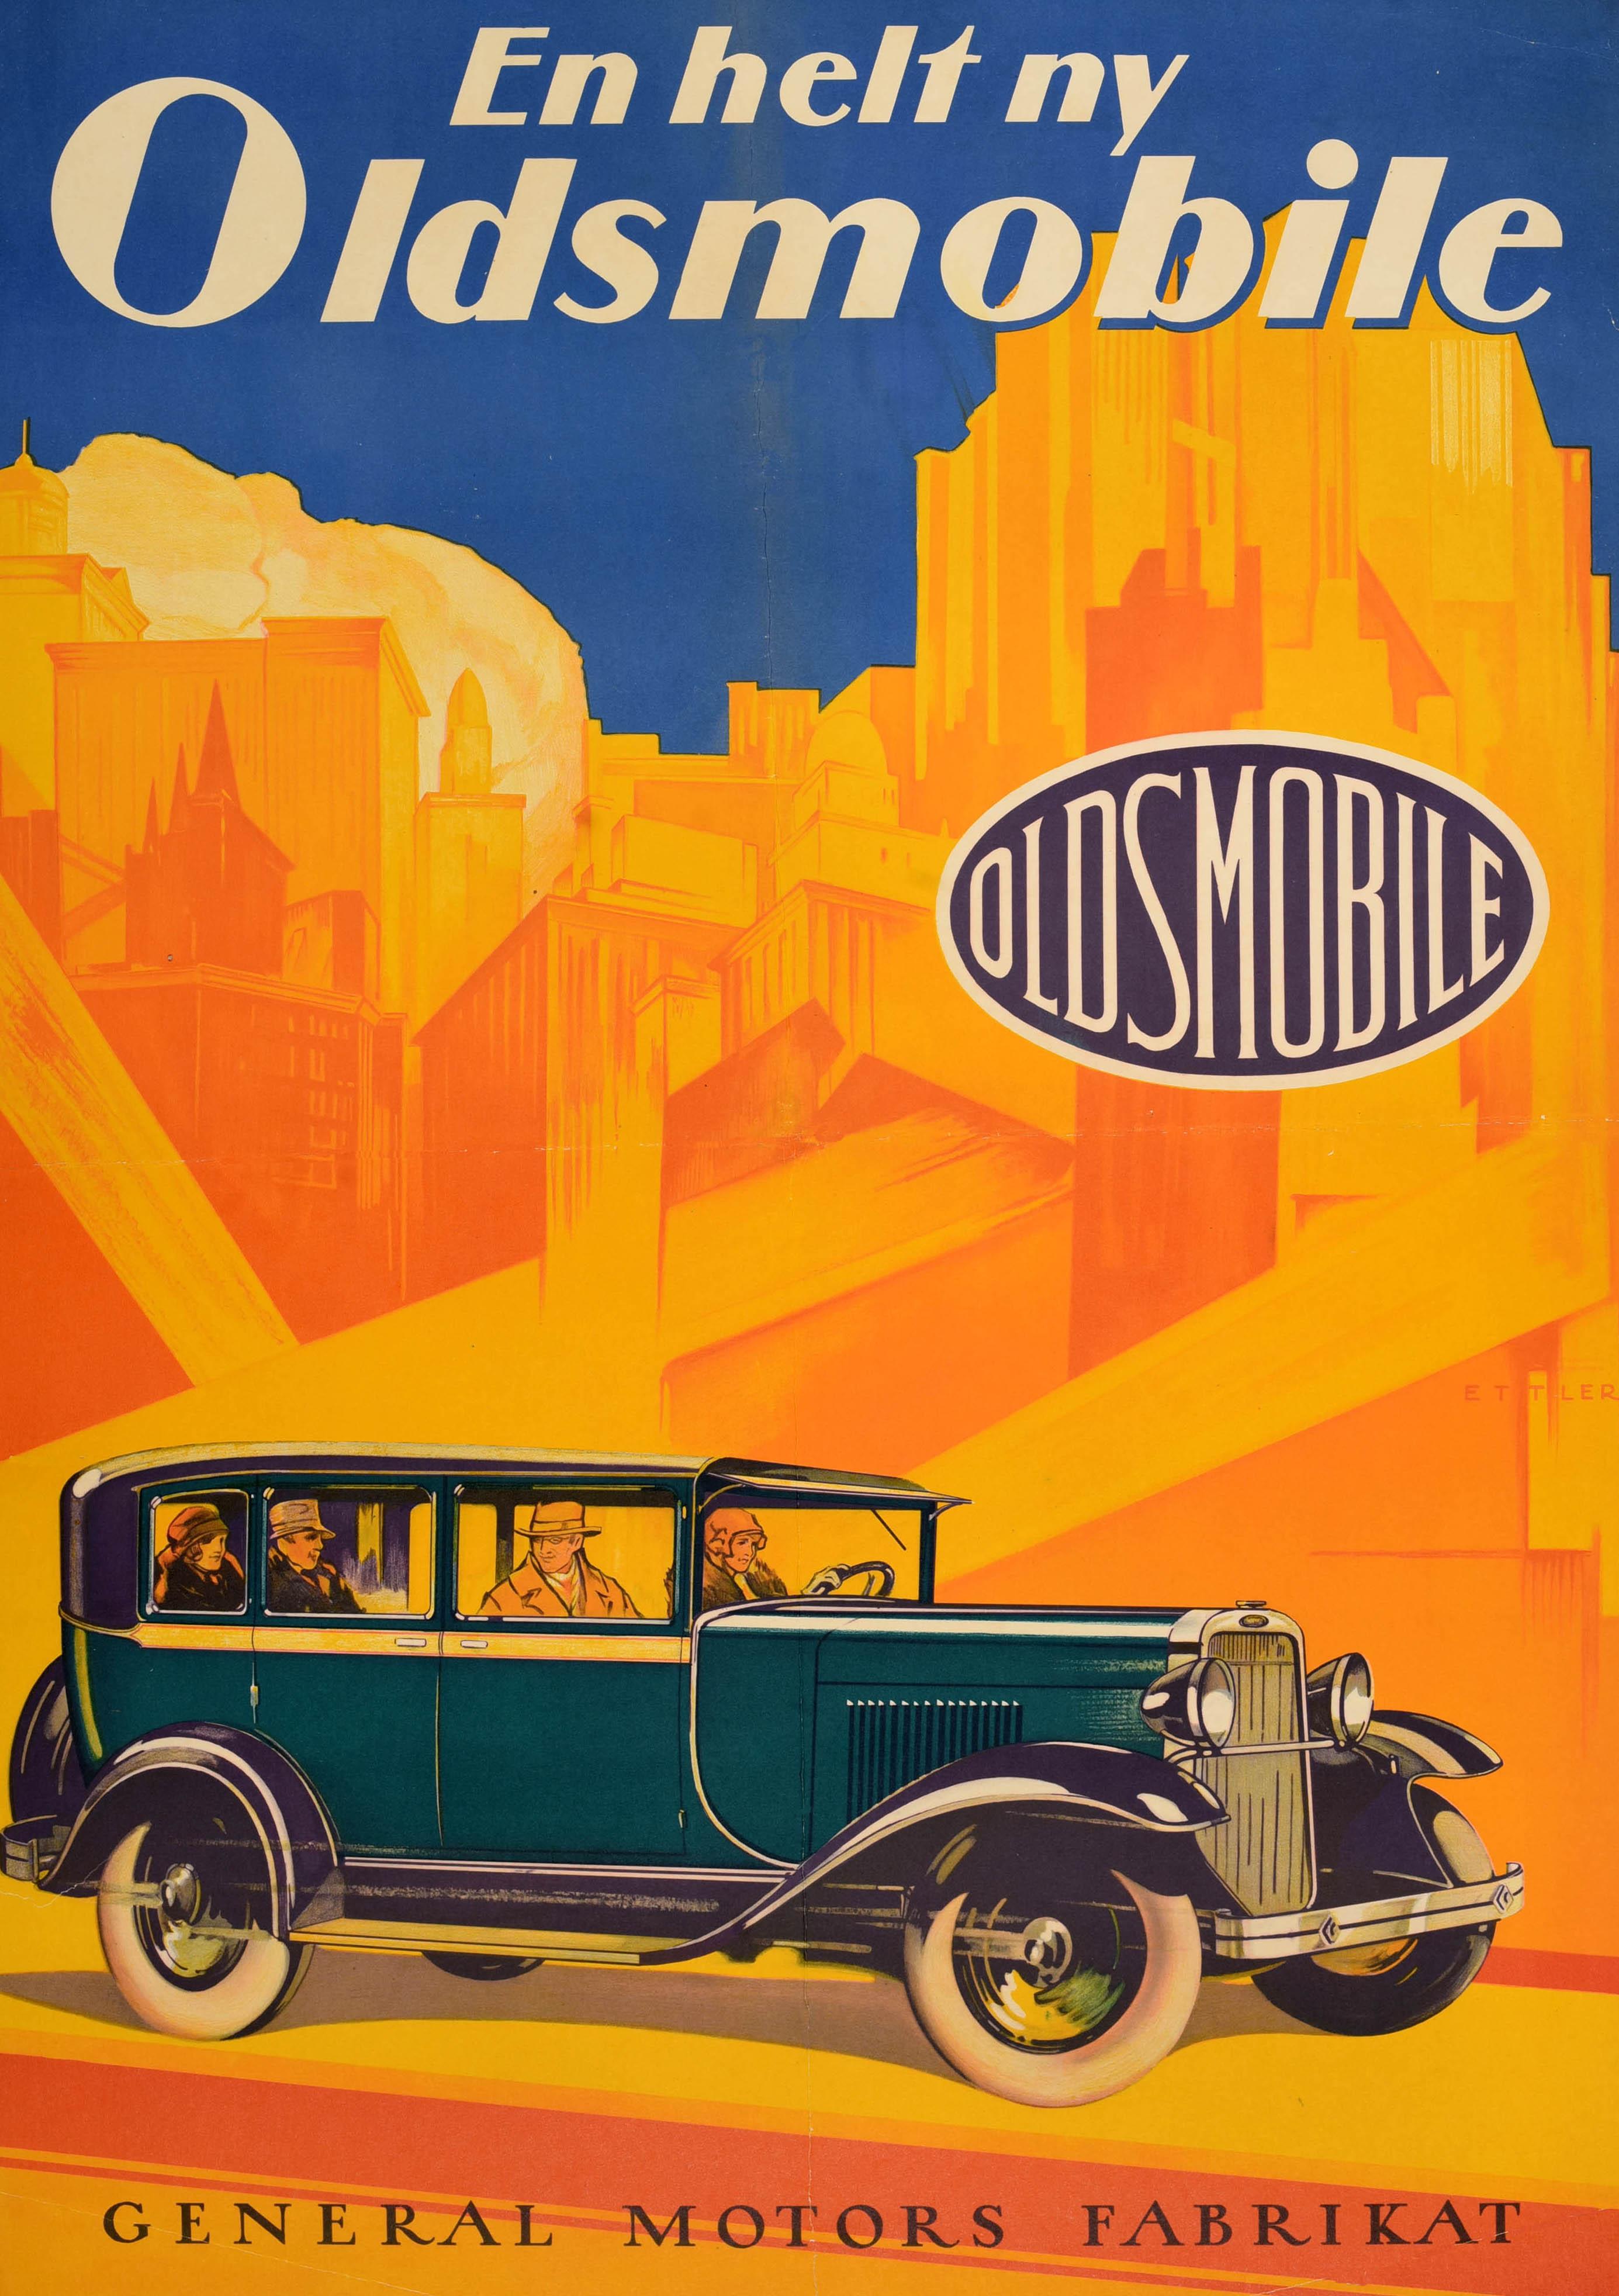 Affiche publicitaire originale - En Helt Ny Oldsmobile General Motors Fabrikat / A Brand New Oldsmobile - présentant un design Art Deco coloré représentant deux couples dans une nouvelle voiture classique élégante roulant à vive allure sur un fond